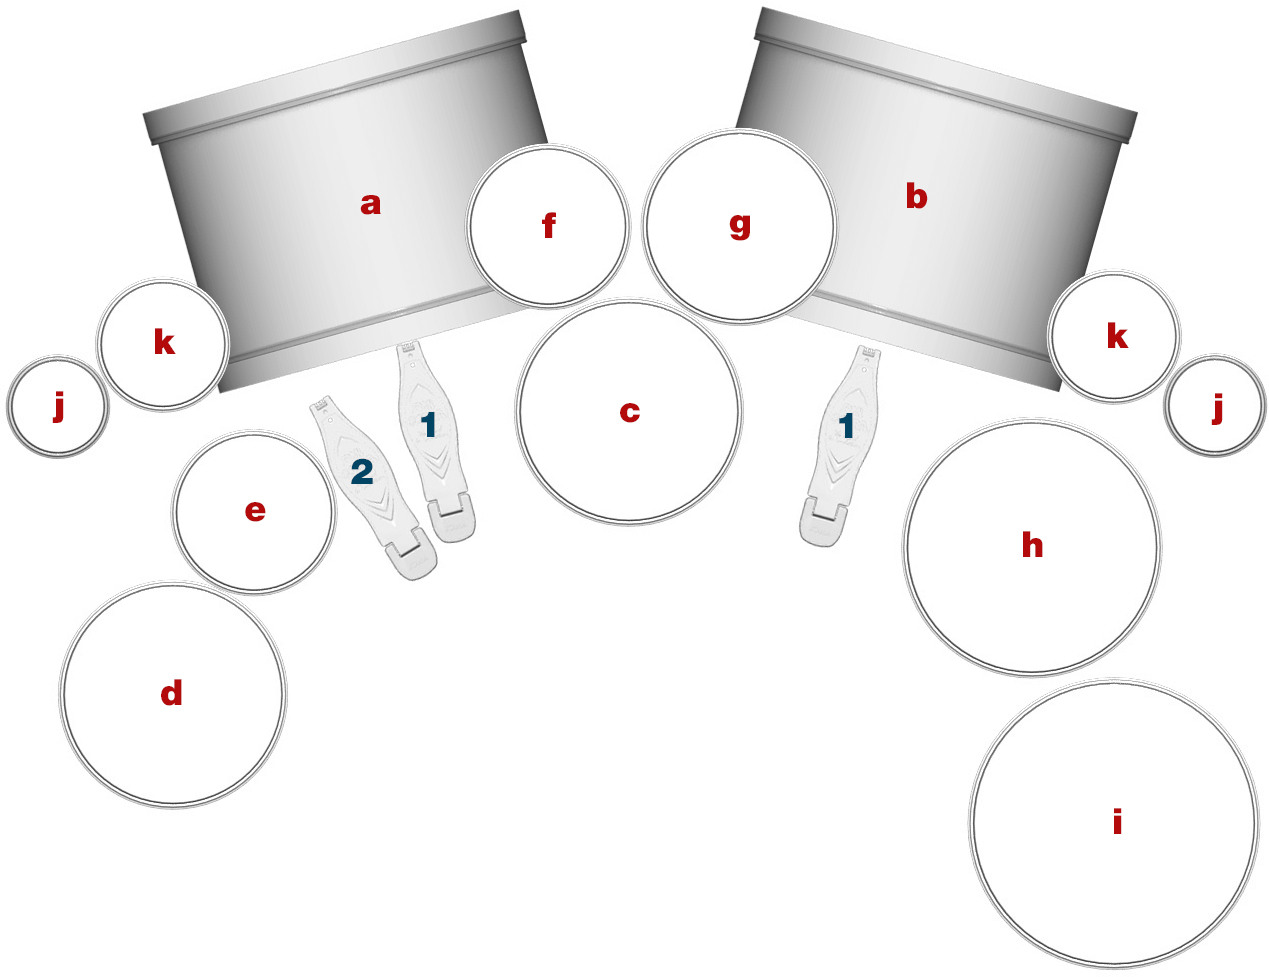 FUMIYAのドラム配置図